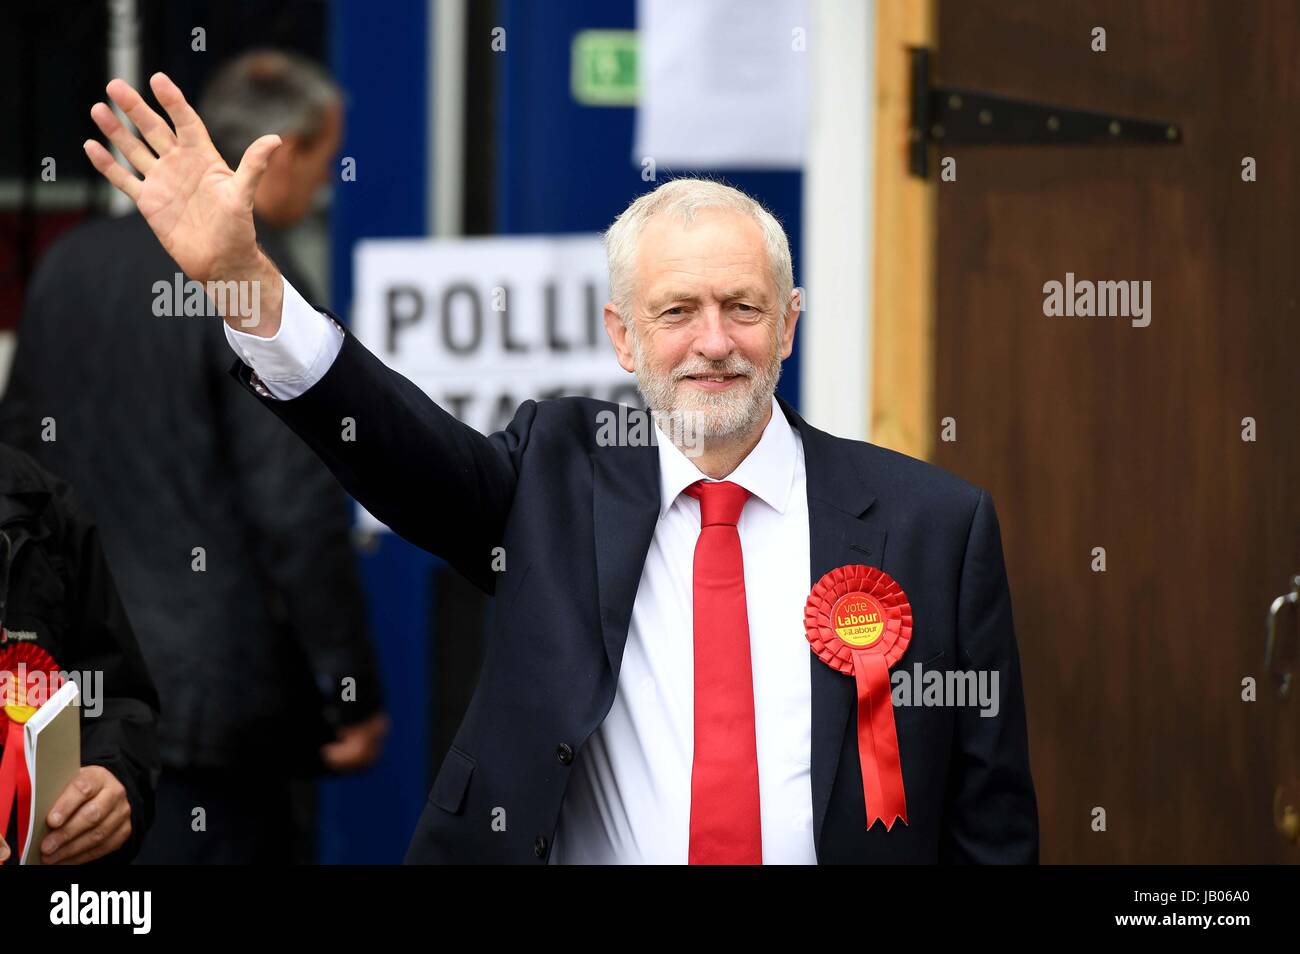 Islington, Londres, Royaume-Uni. 8 juin, 2017. Jeremy Corbyn arrive pour voter au bureau de vote de l'école primaire Pakeman dans Islington Crédit : Finnbarr Webster/Alamy Live News Banque D'Images